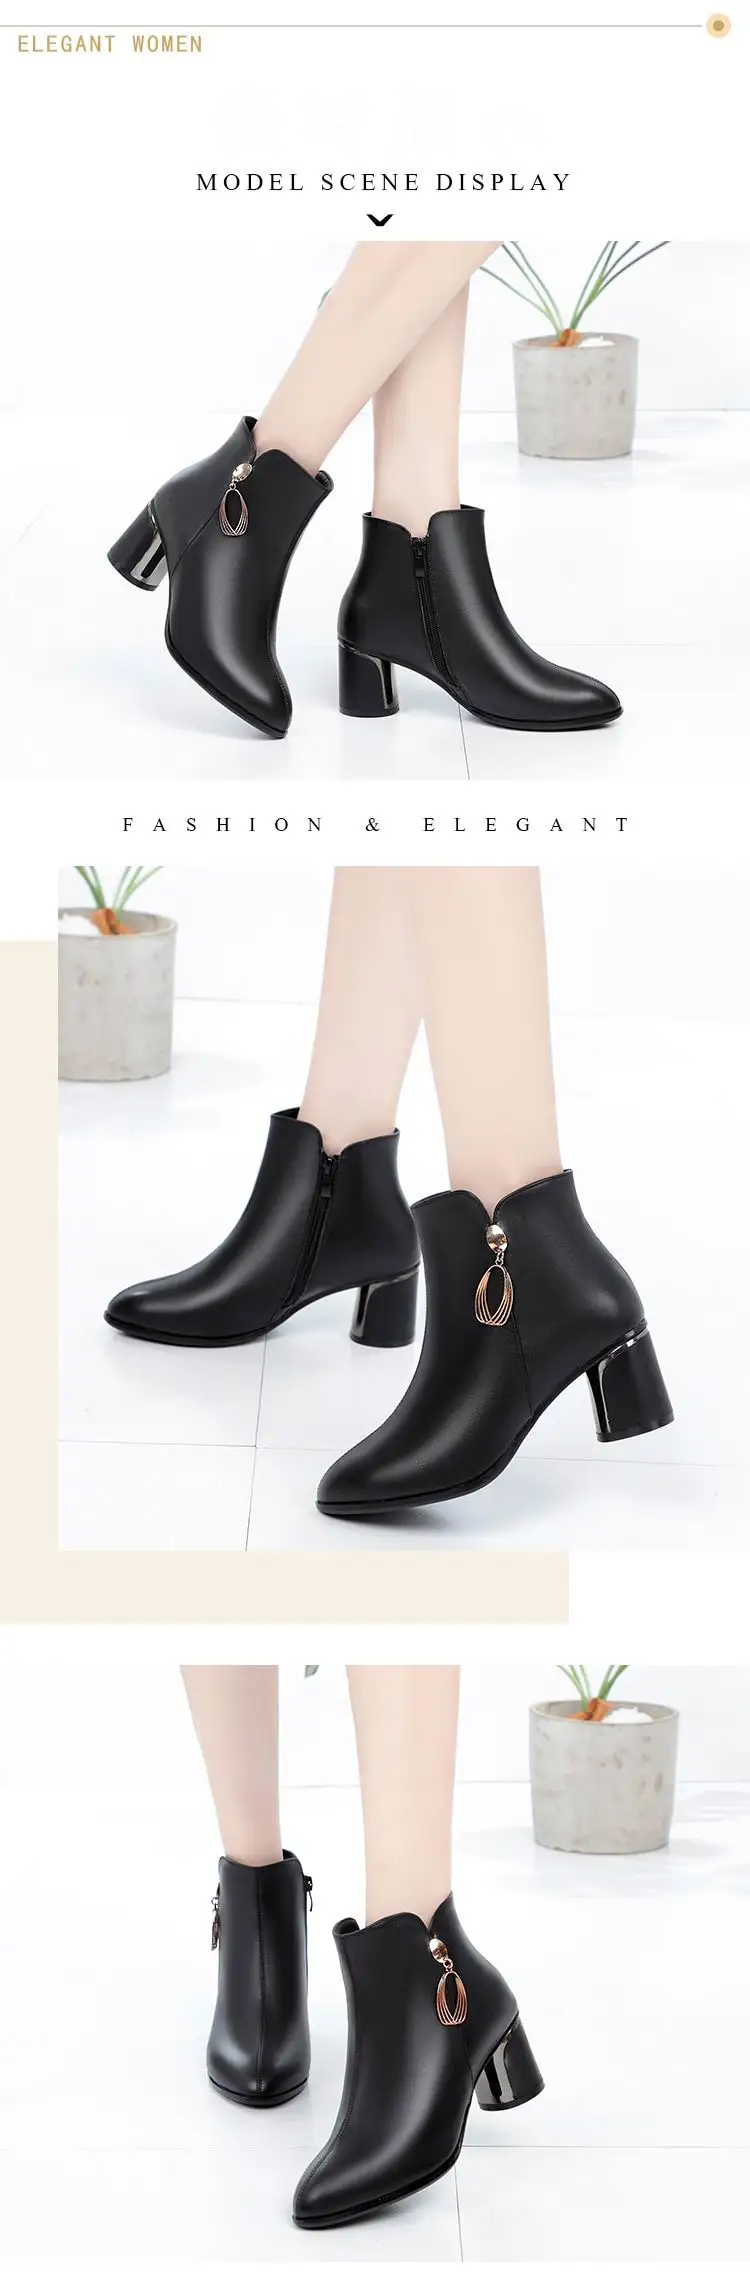 GKTINOO/женские ботинки; коллекция года; зимние женские ботильоны на высоком каблуке; повседневная женская обувь на молнии; ботинки из натуральной кожи; Botas Mujer